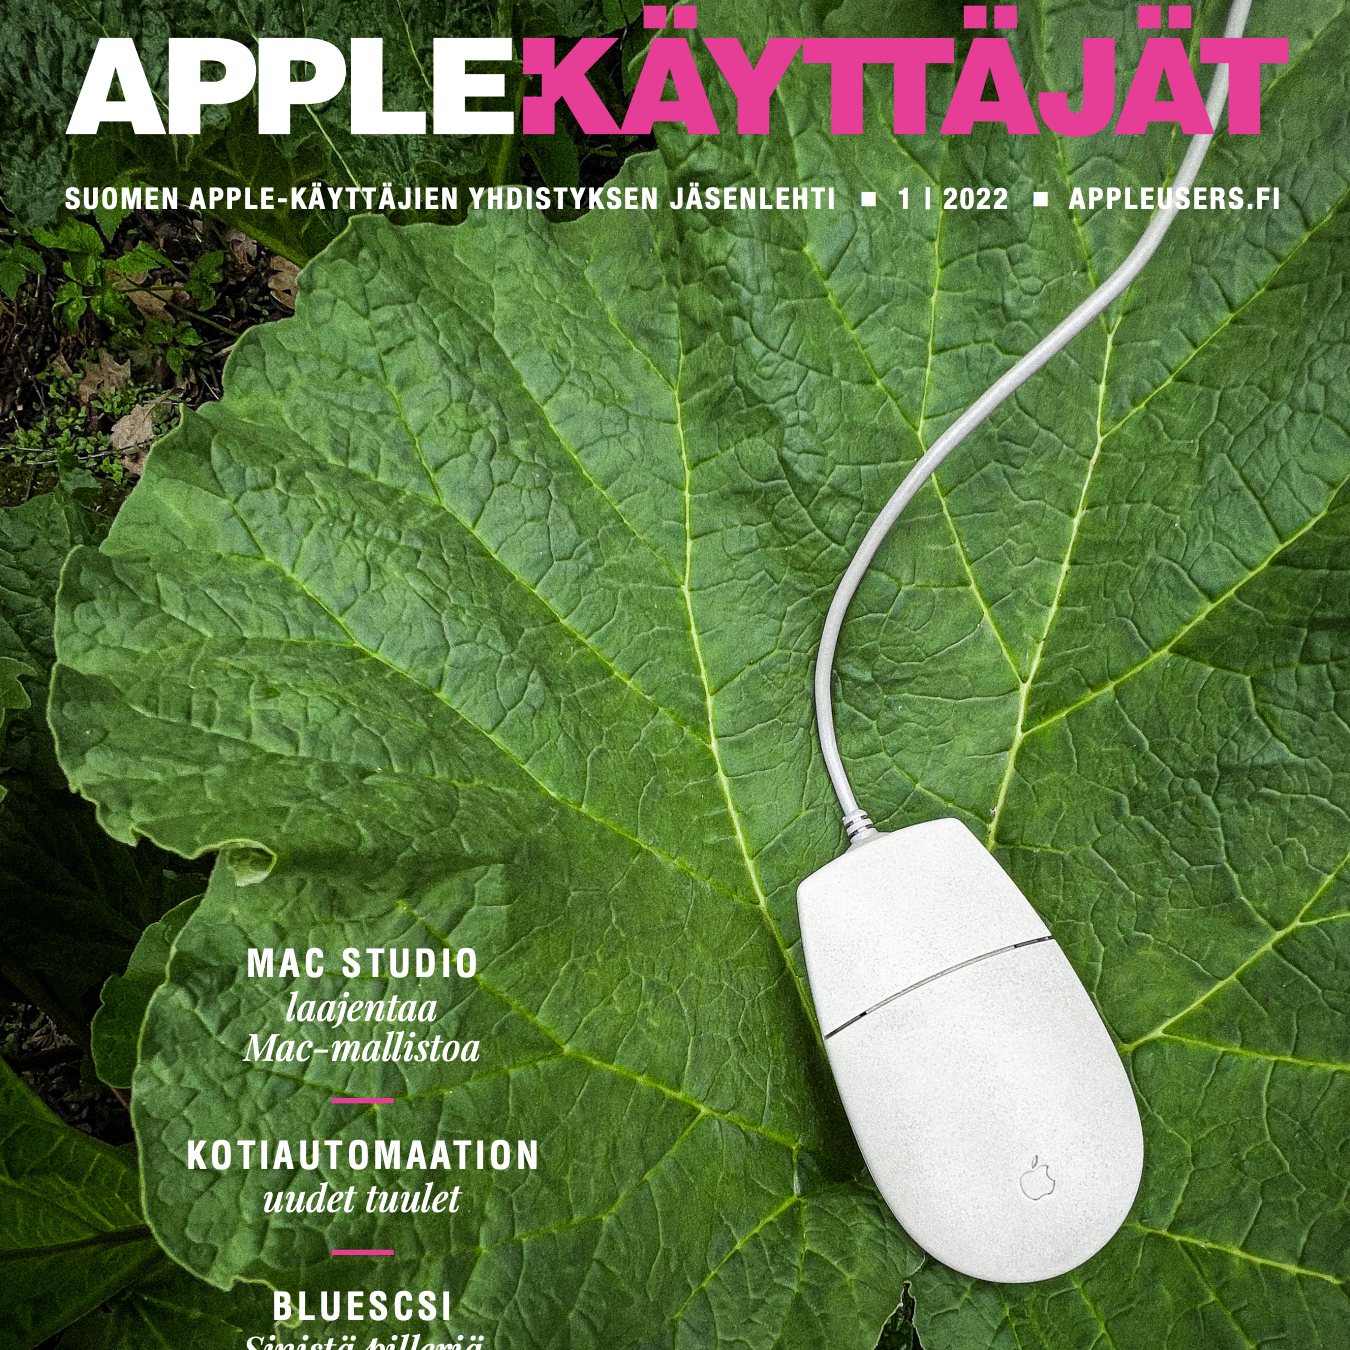 Apple-käyttäjät 1/2022 lehden kansisivu. Kuvassa Apple Desktop Bus Mouse II vihreän raparperinlehden päällä, Apple-käyttäjät logo, sekä lehden artikkeleiden otsikoita.